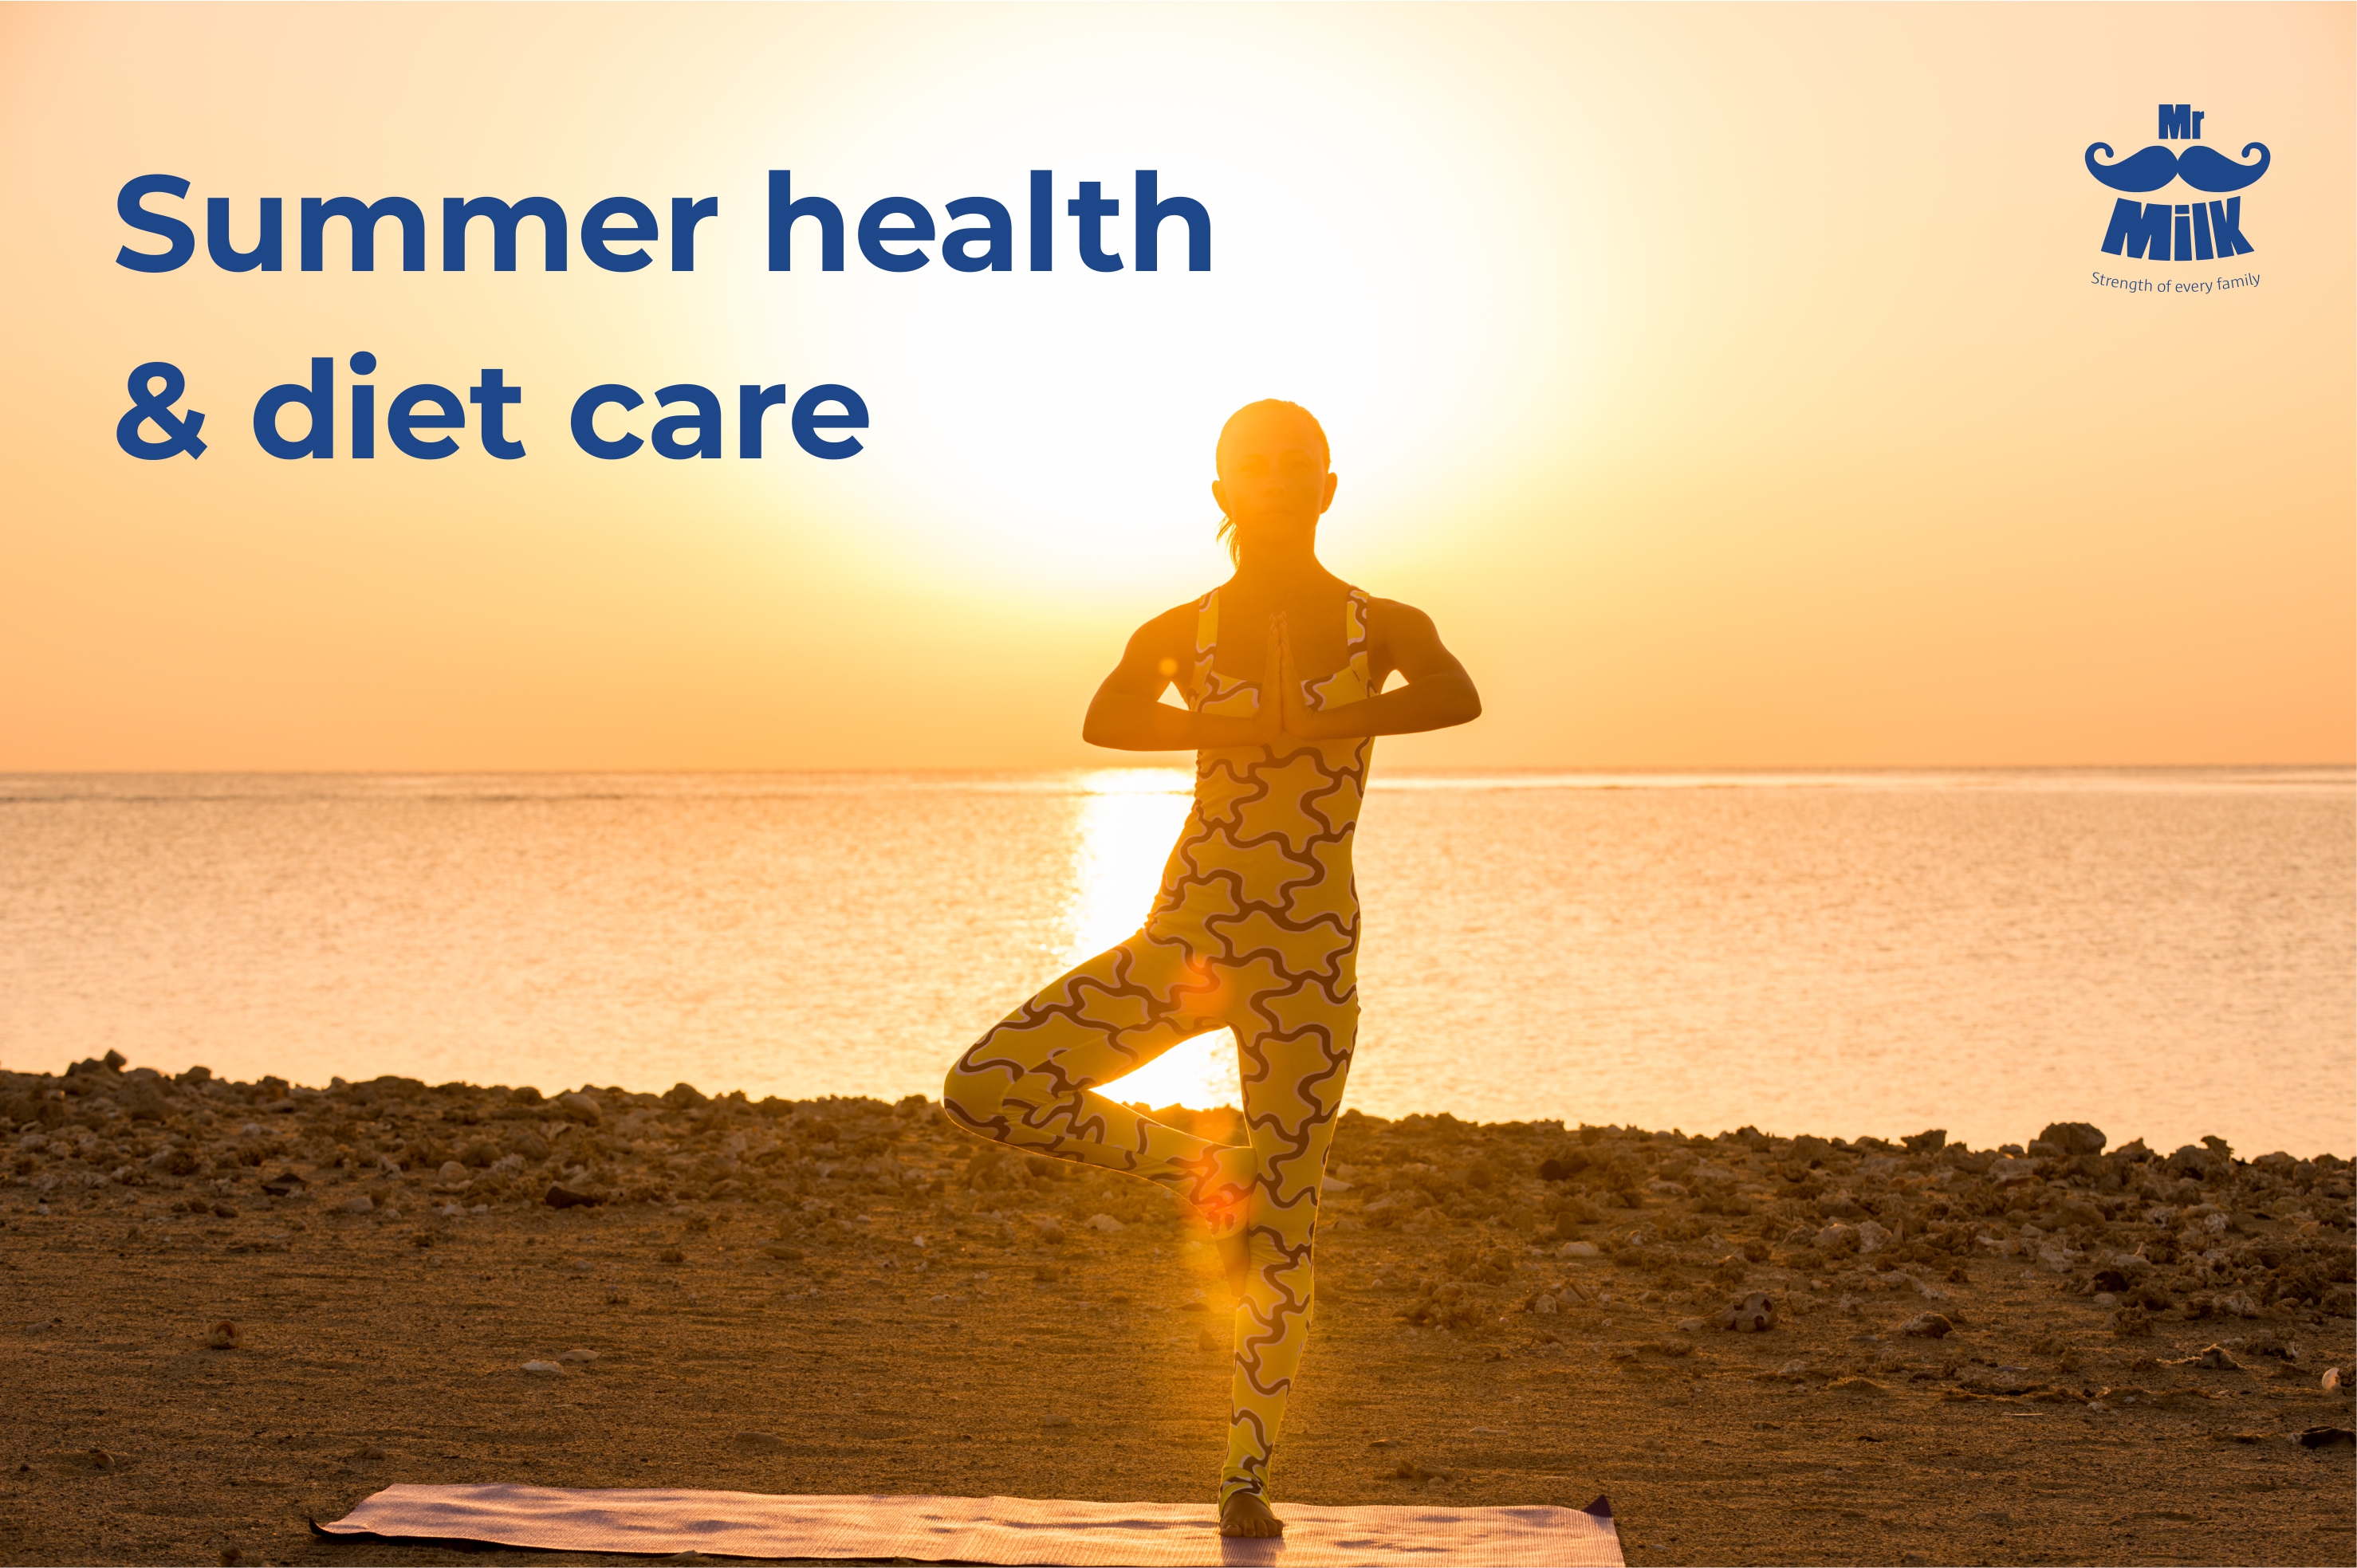 Summer health & diet care